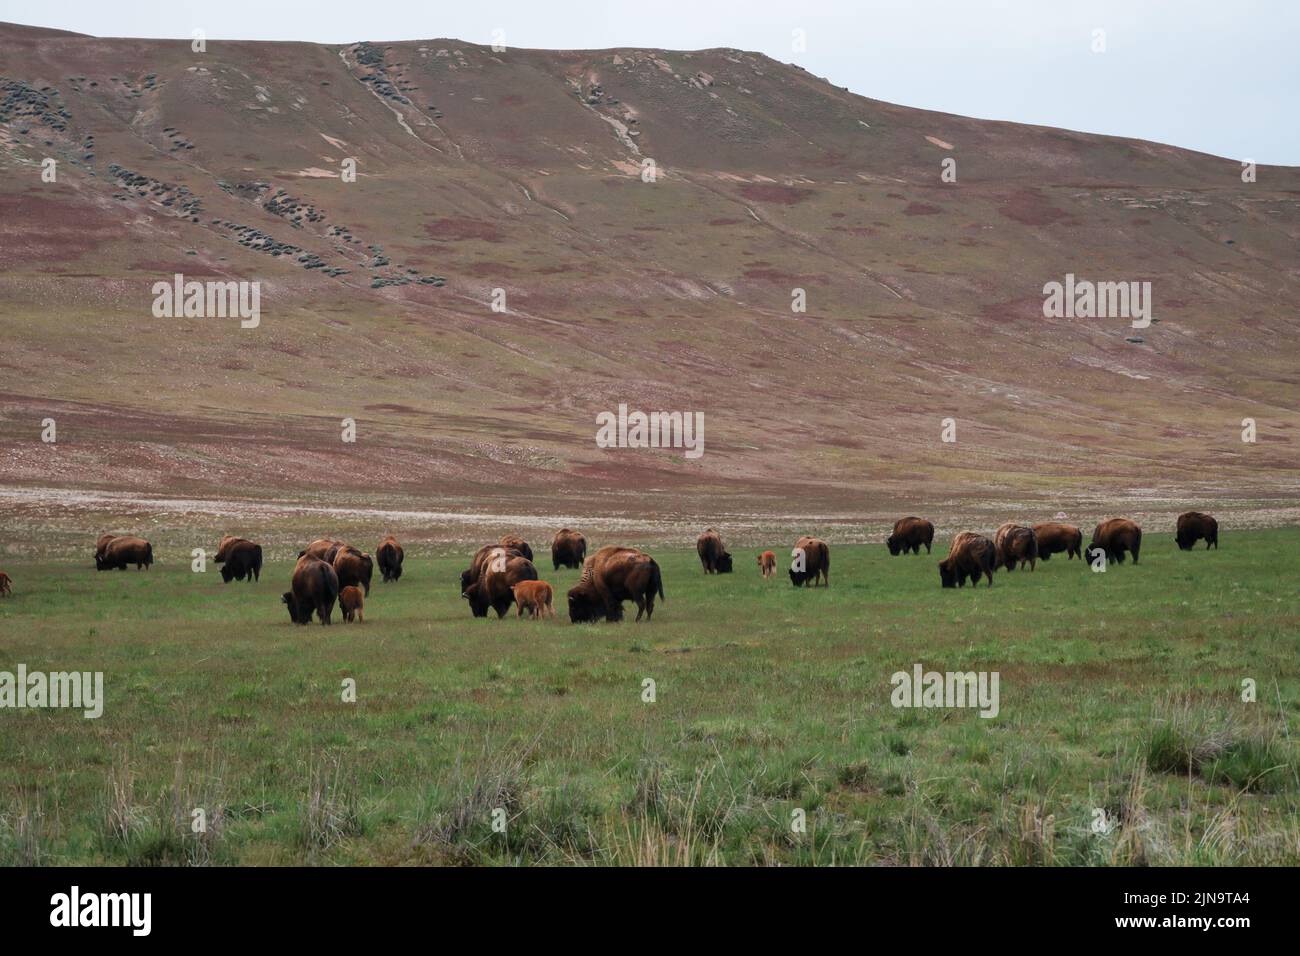 A herd of bison roaming the Great Salt Lake of Utah Stock Photo